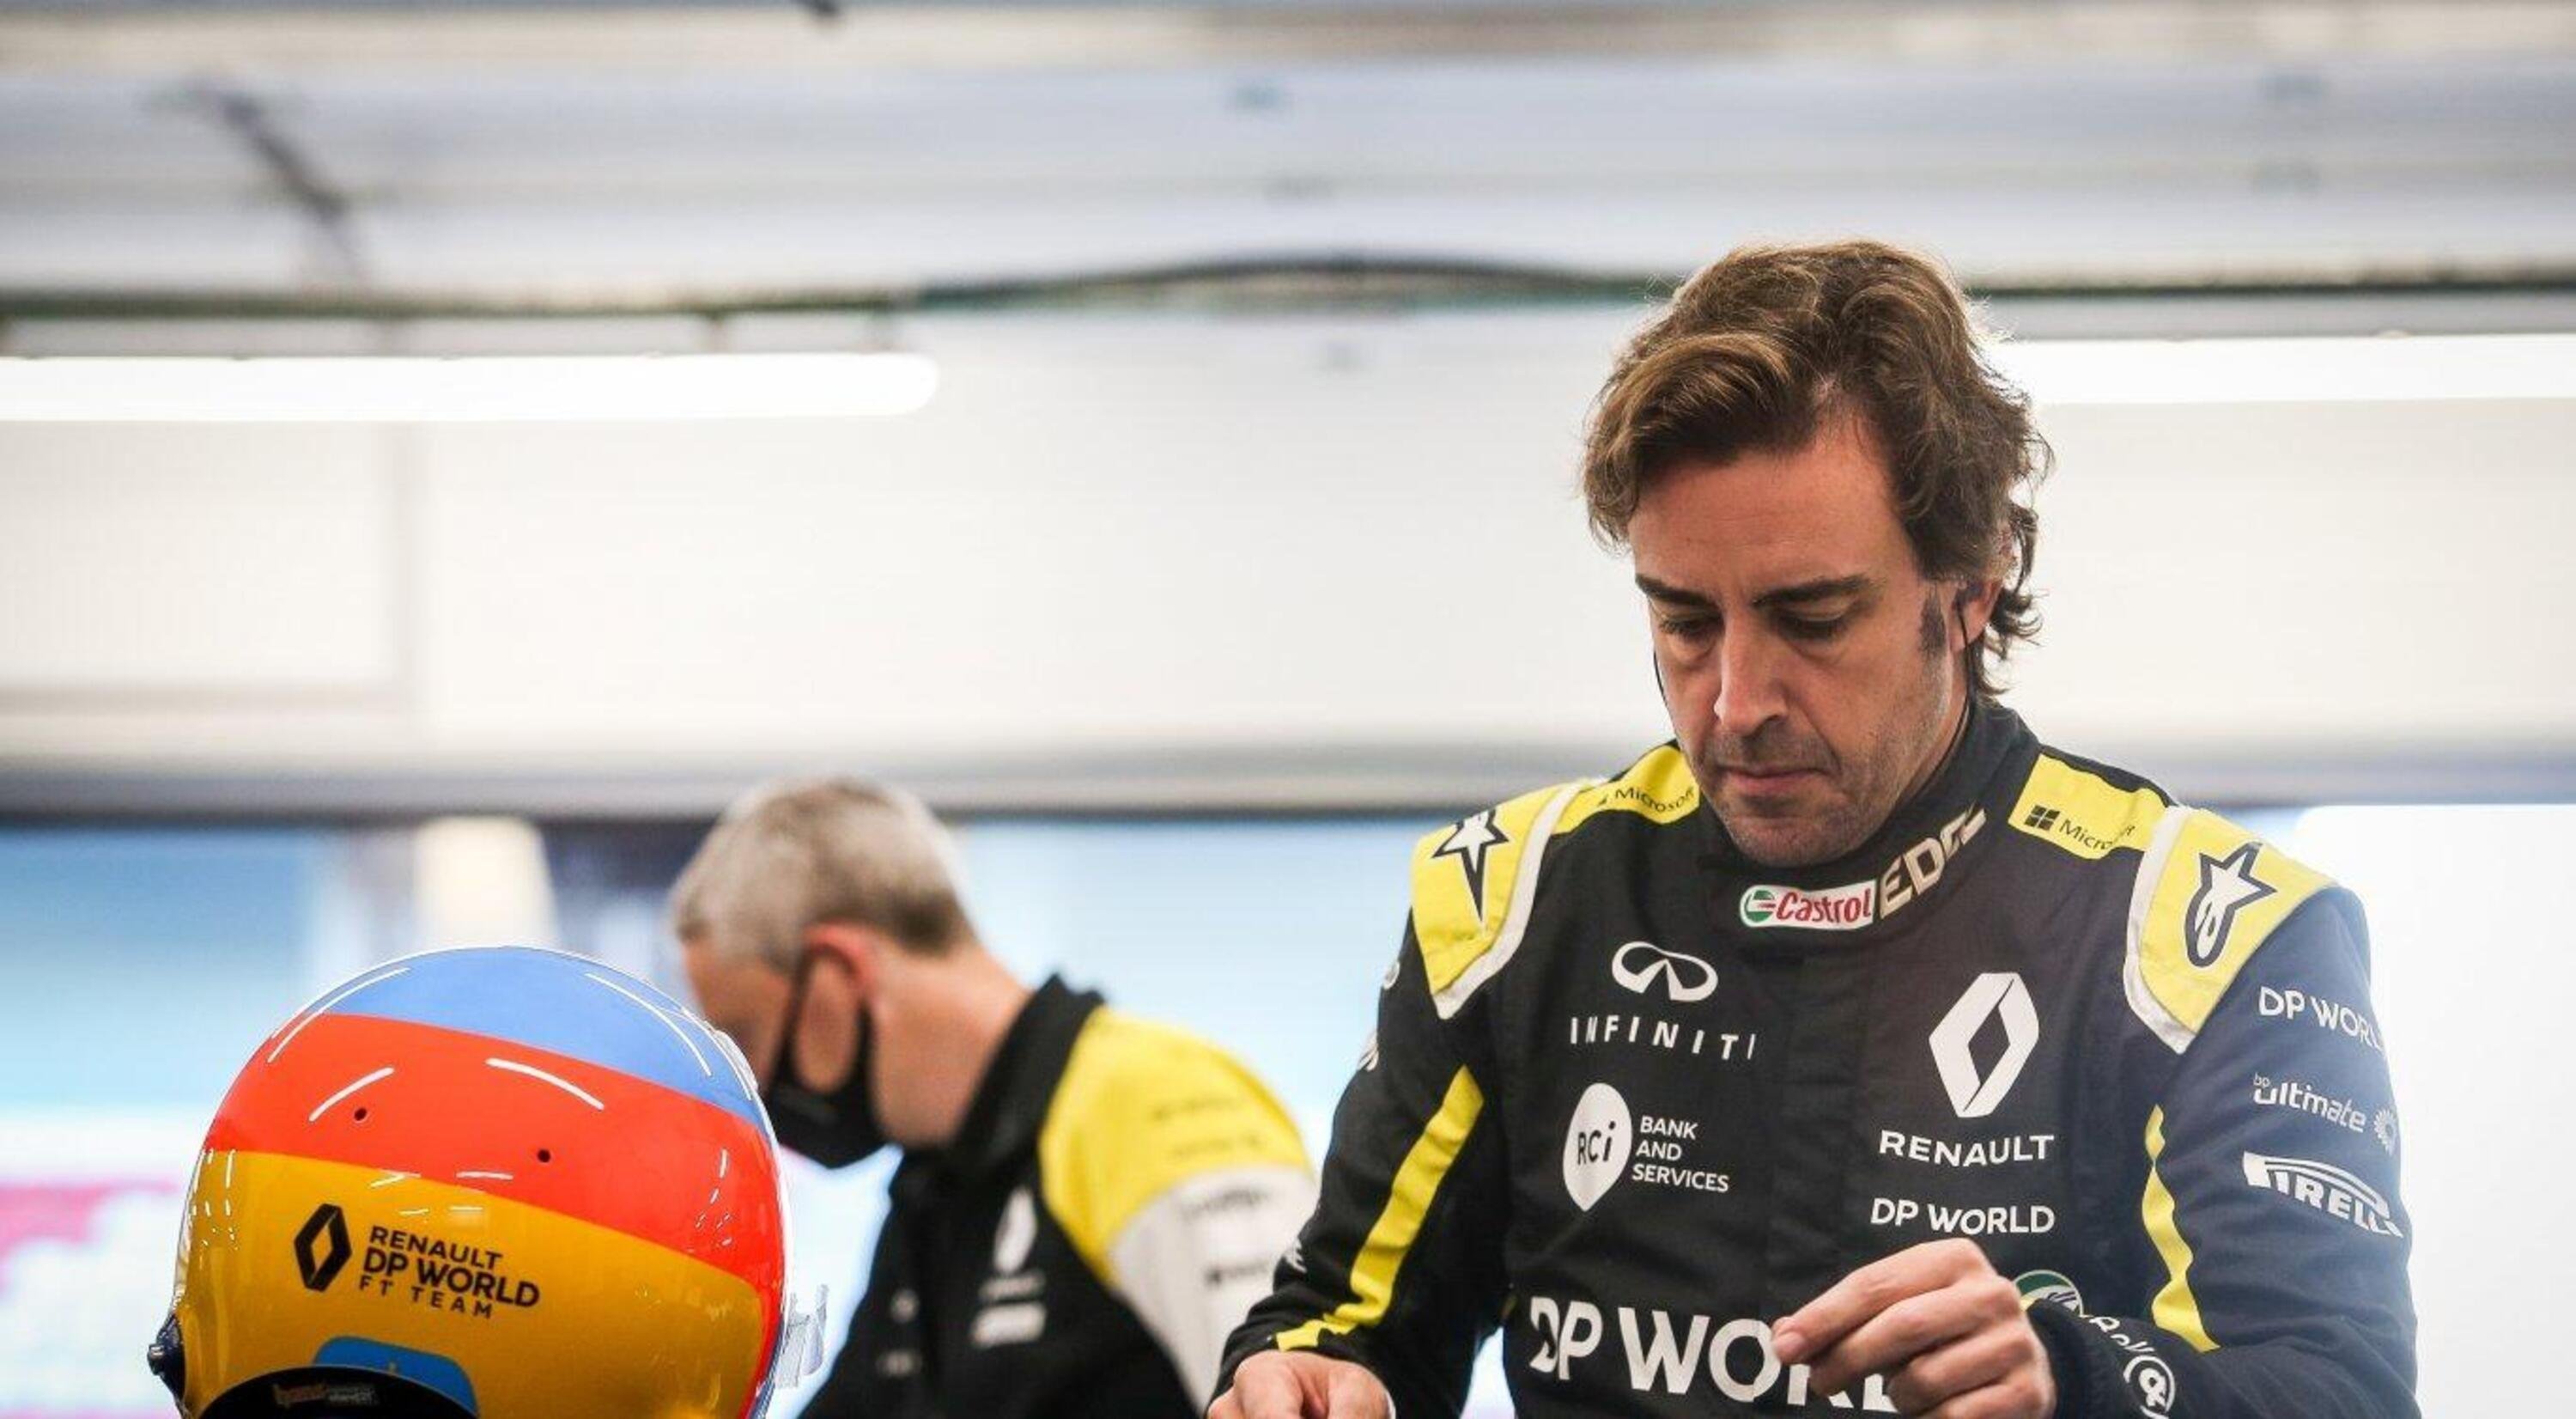 Alonso: primo contatto con la Renault R.S.20